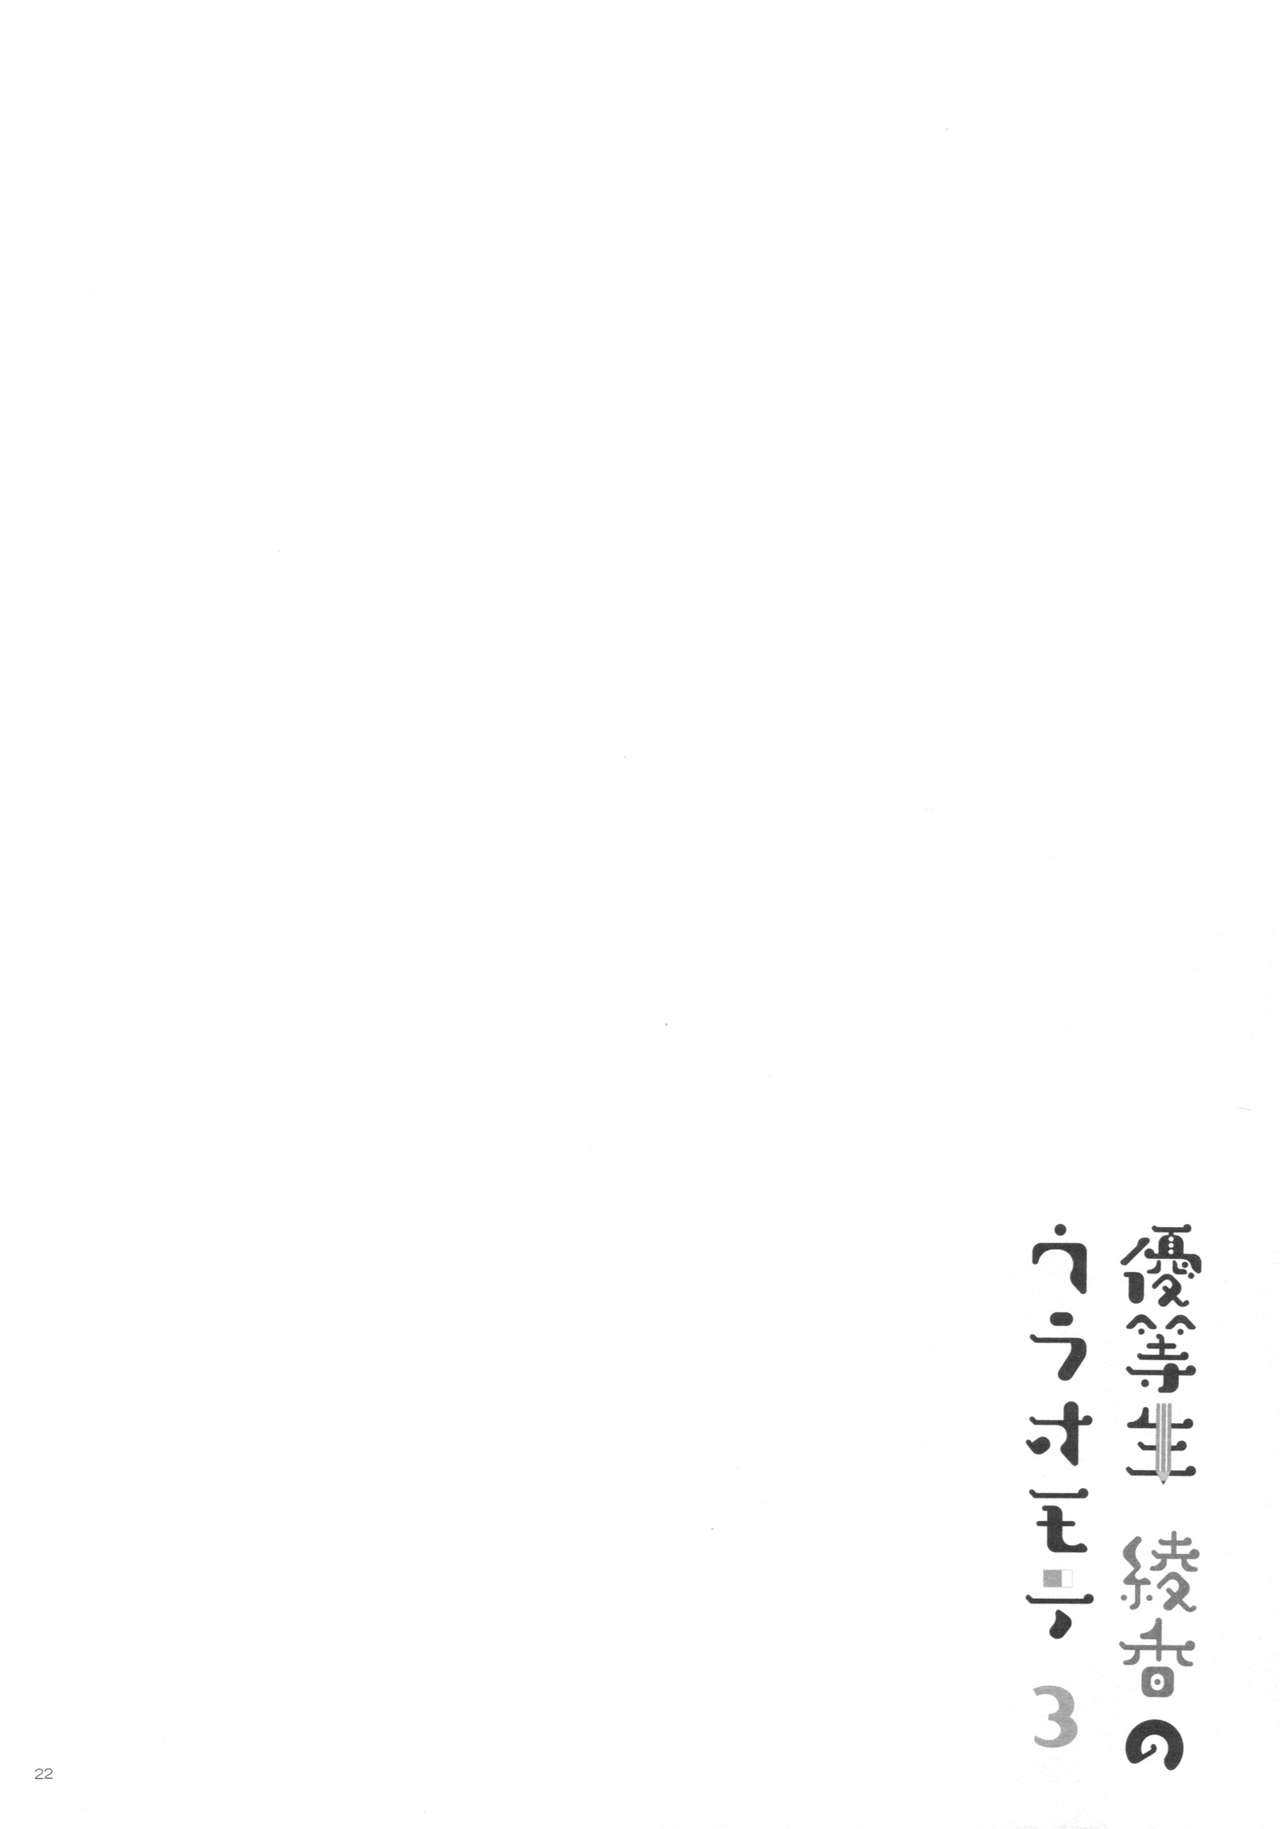 (C91) [moco chouchou (ひさまくまこ)] 優等生 綾香のウラオモテ 3